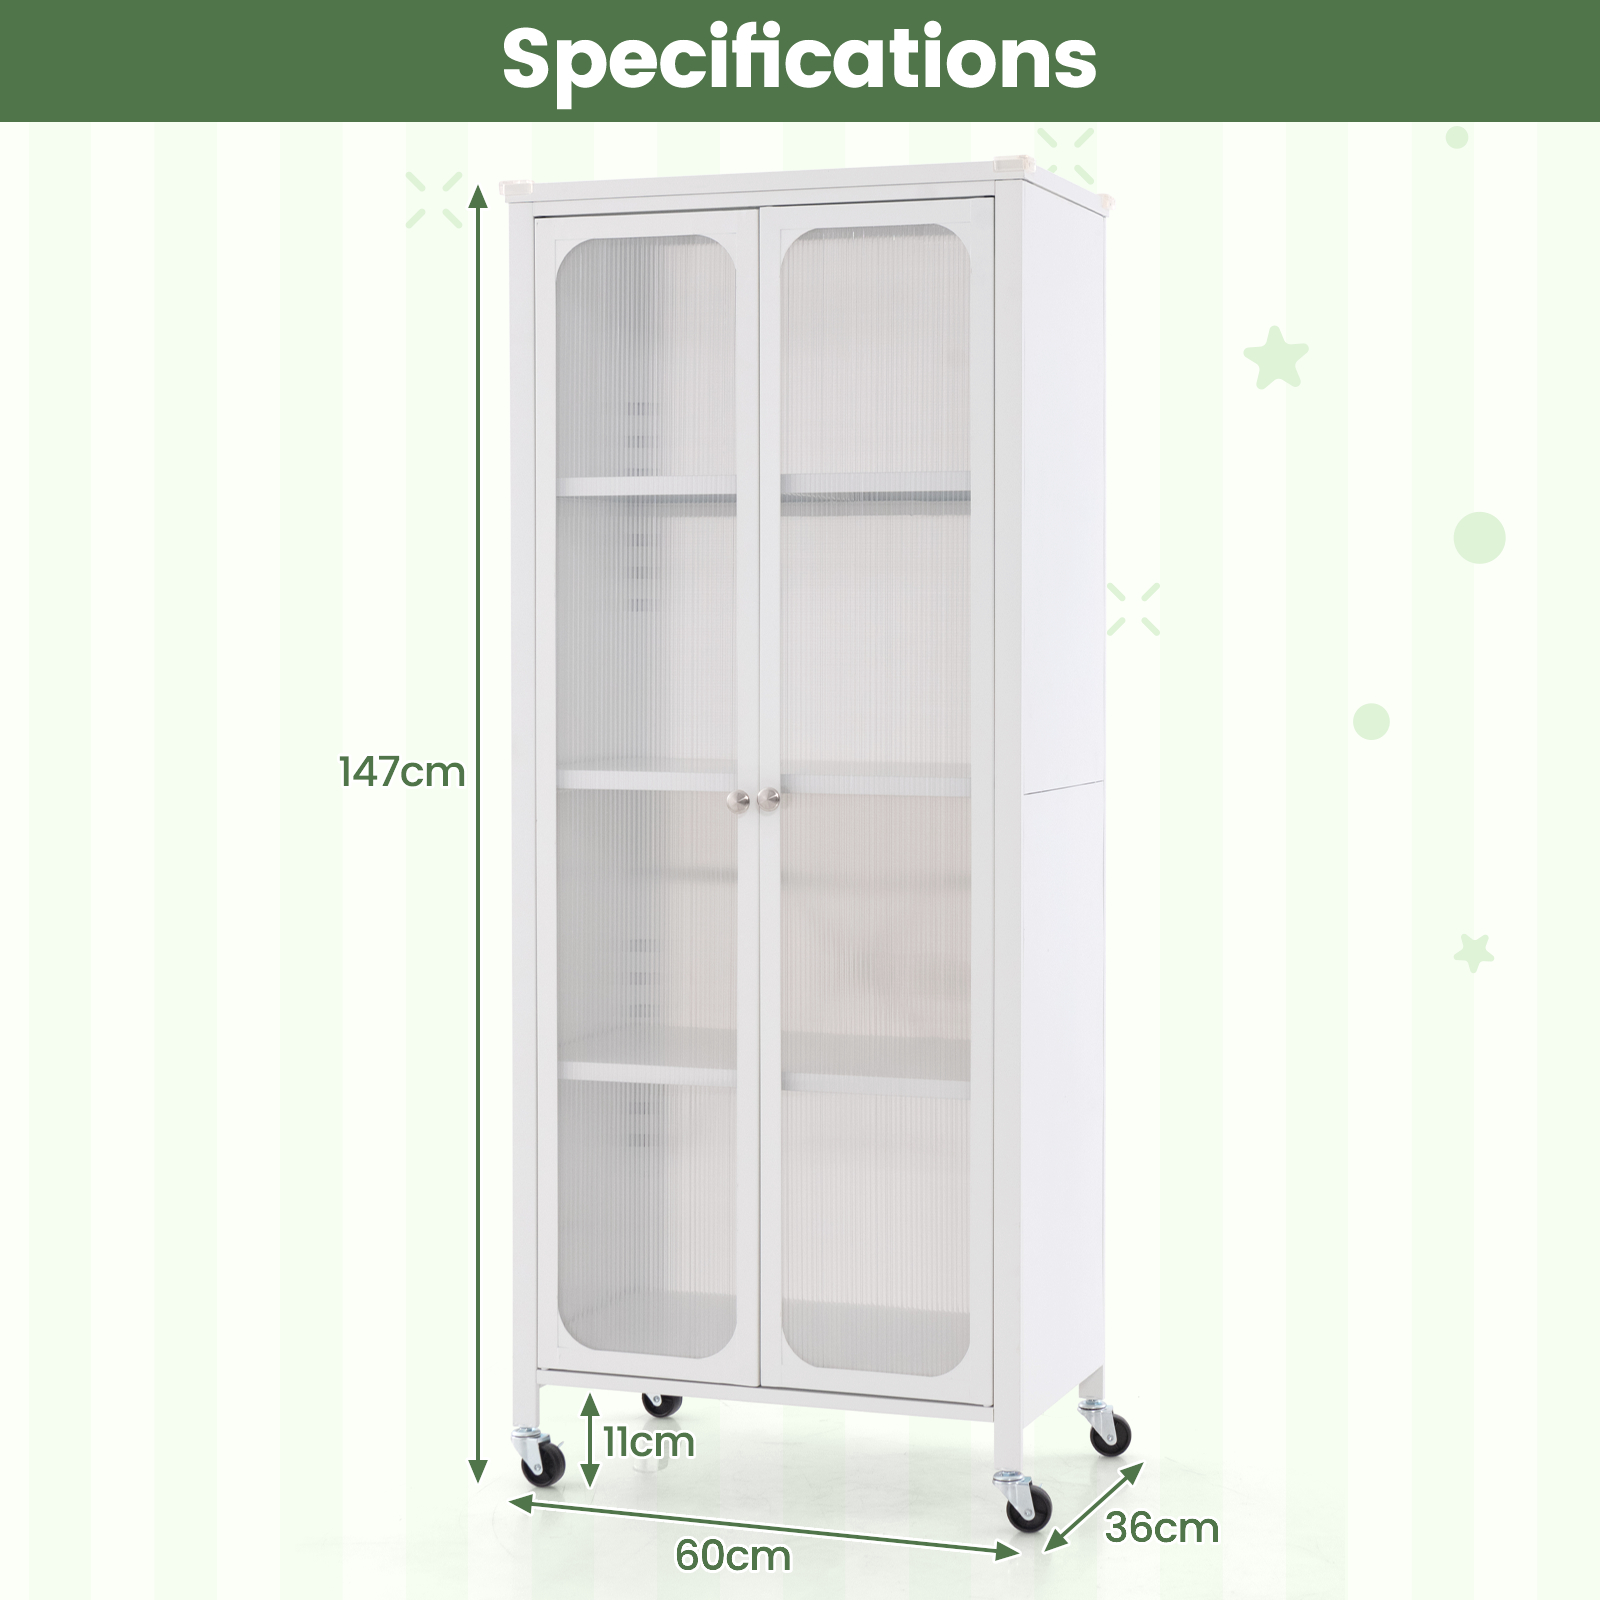 Mobile_2_Doors_Food_Pantry_Cupboard_Storage_Cabinet_with_Wheels-5.jpg